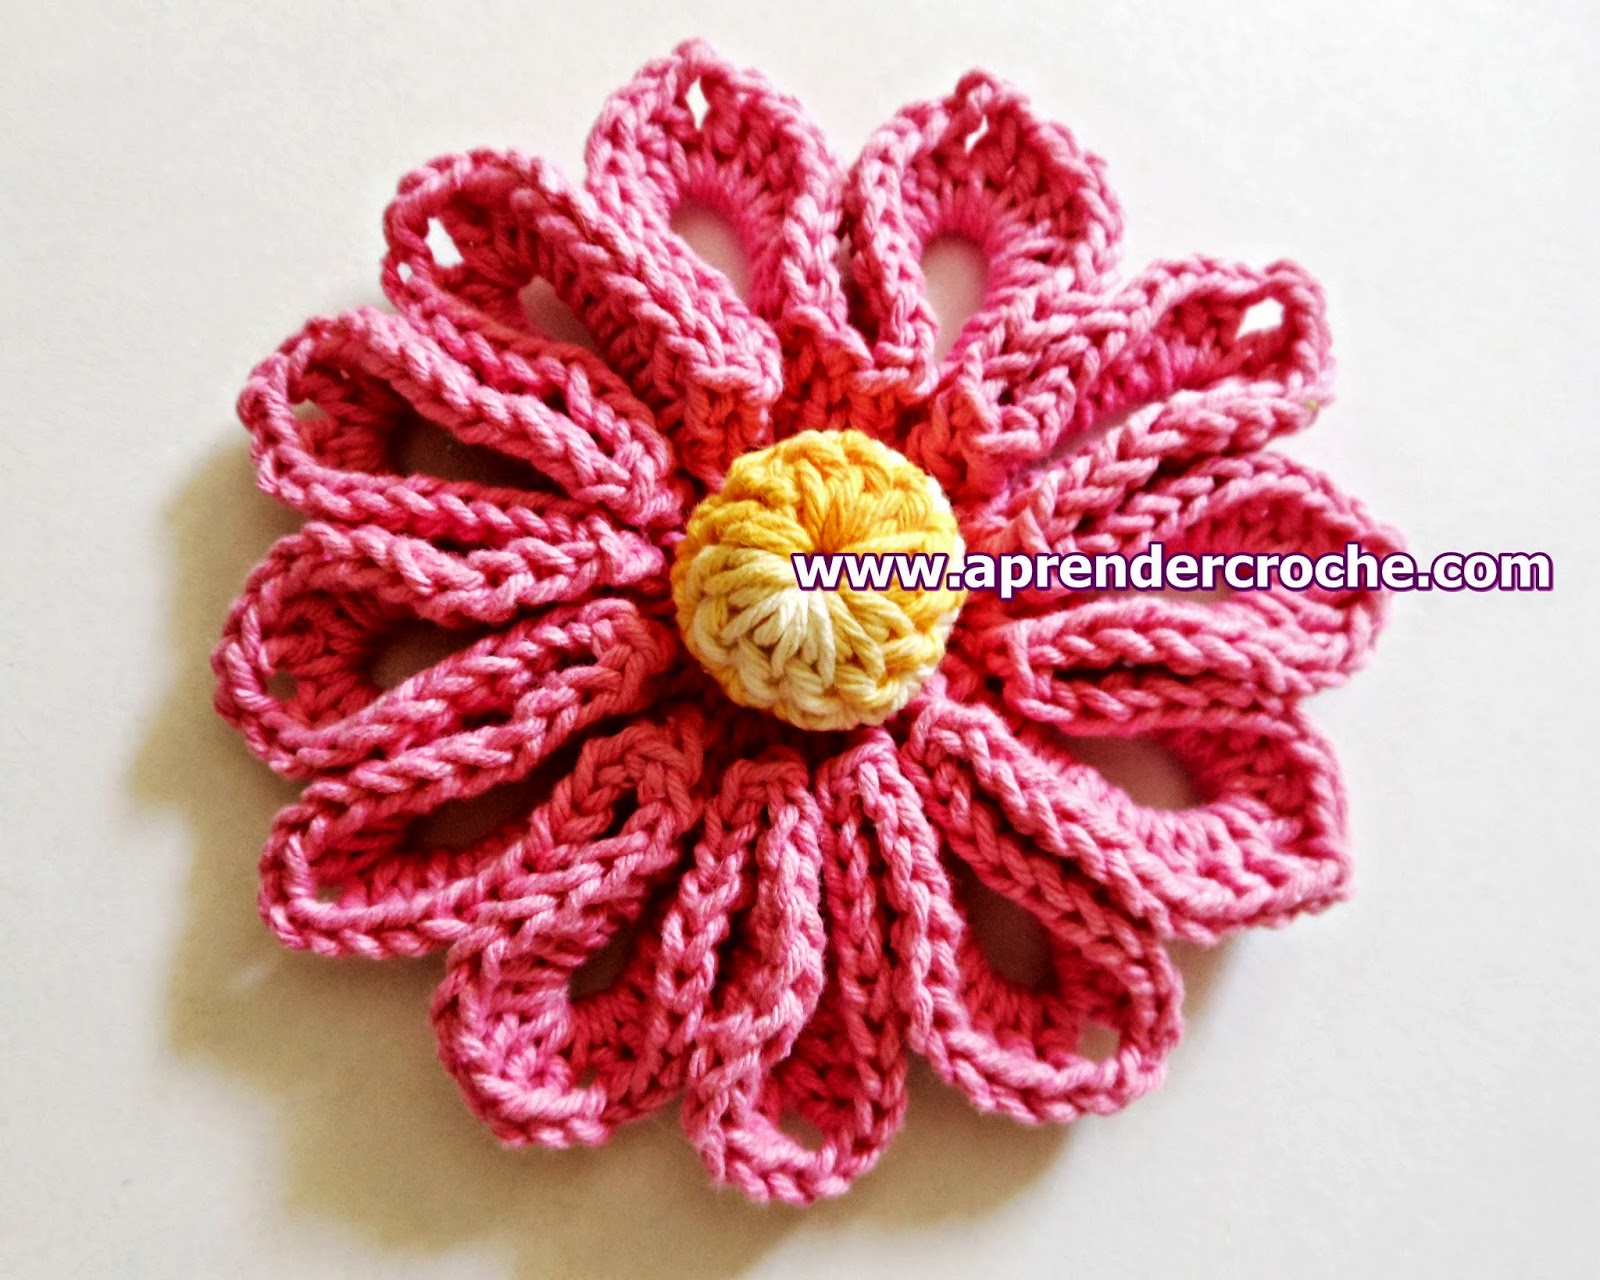 dvd em croche flores coleção aprender croche com edinir-croche na loja curso de croche com frete gratis